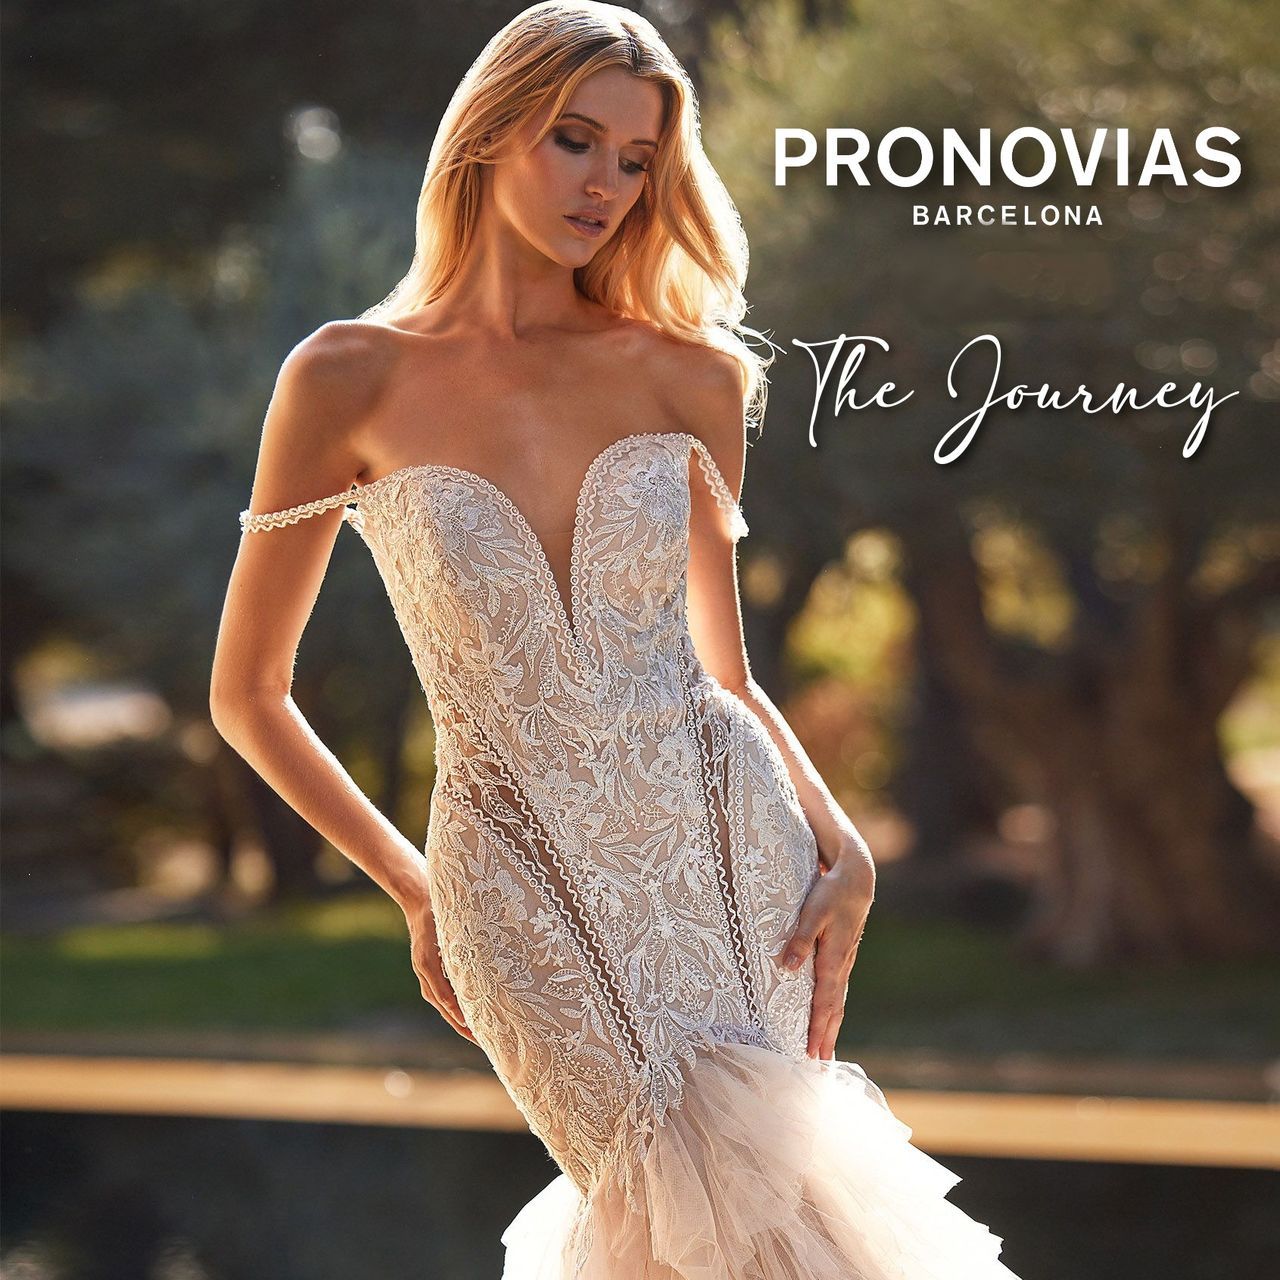 Pronovias The Journey esküvői ruha kollekció